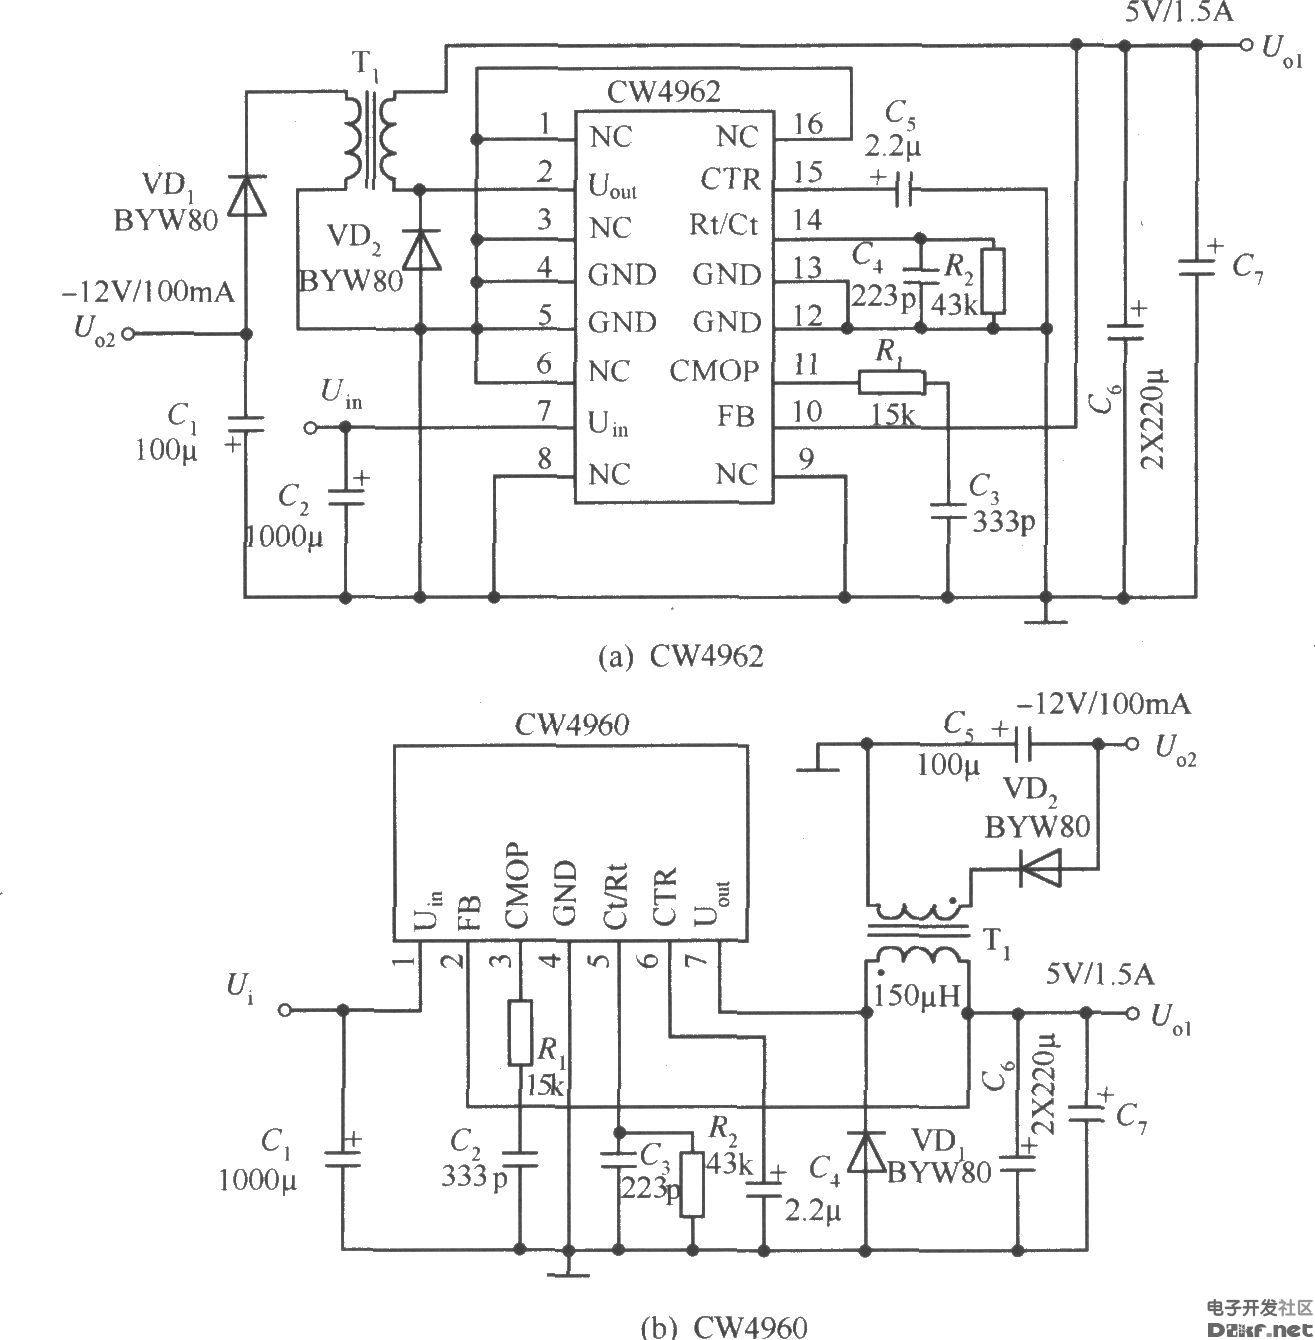 CW4960/CW4962构成双电压( 5V/1.5A、-12V/100mA)输出的应用电路